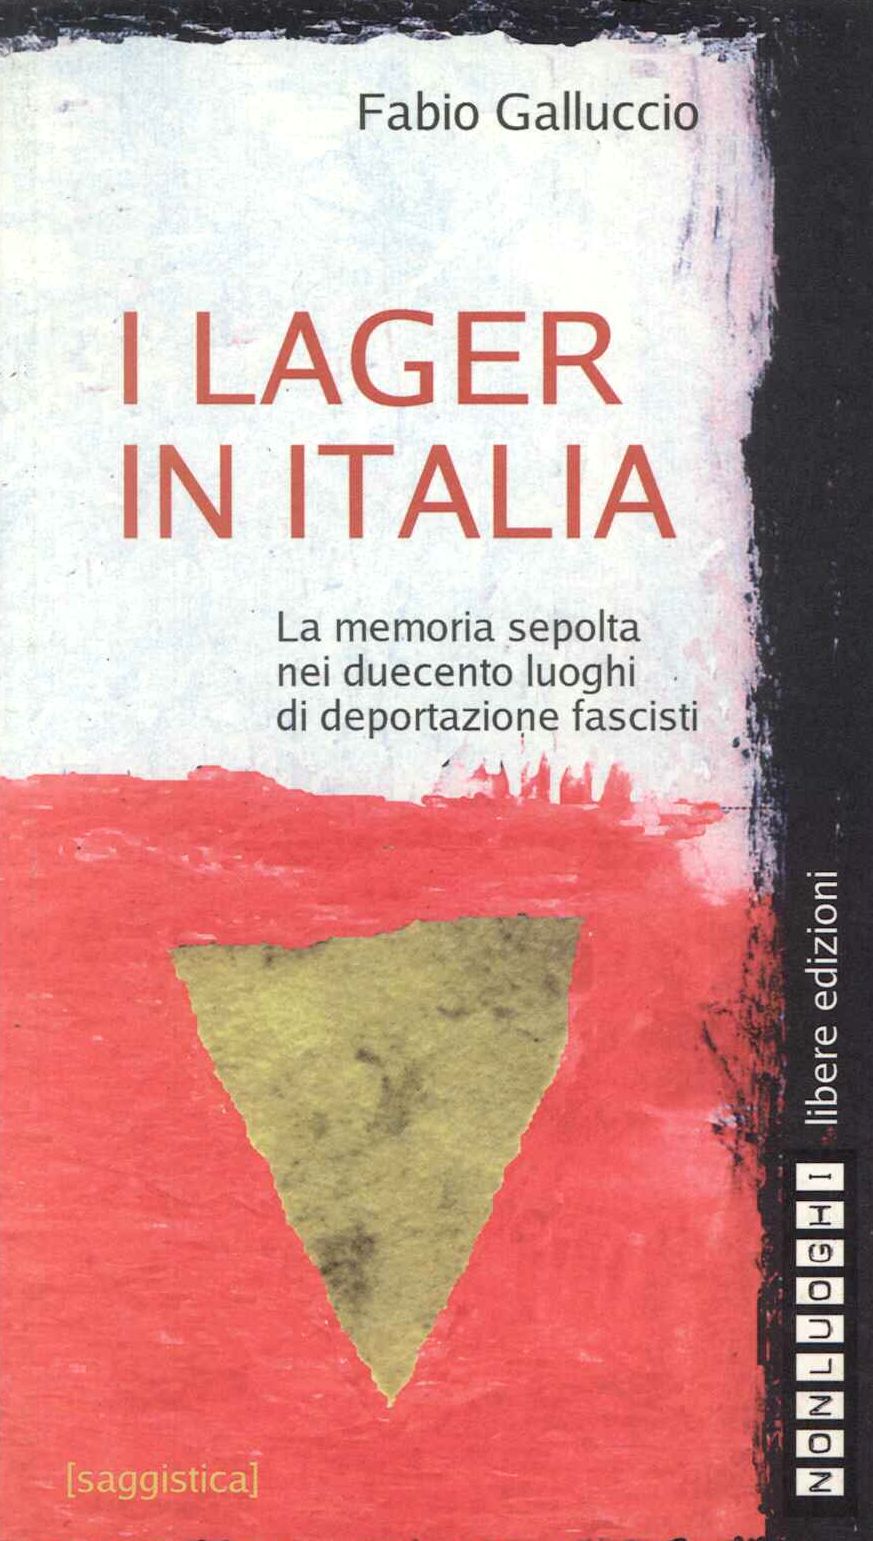 Lager in italia. La memoria sepolta nei 200 luoghi di deportazio